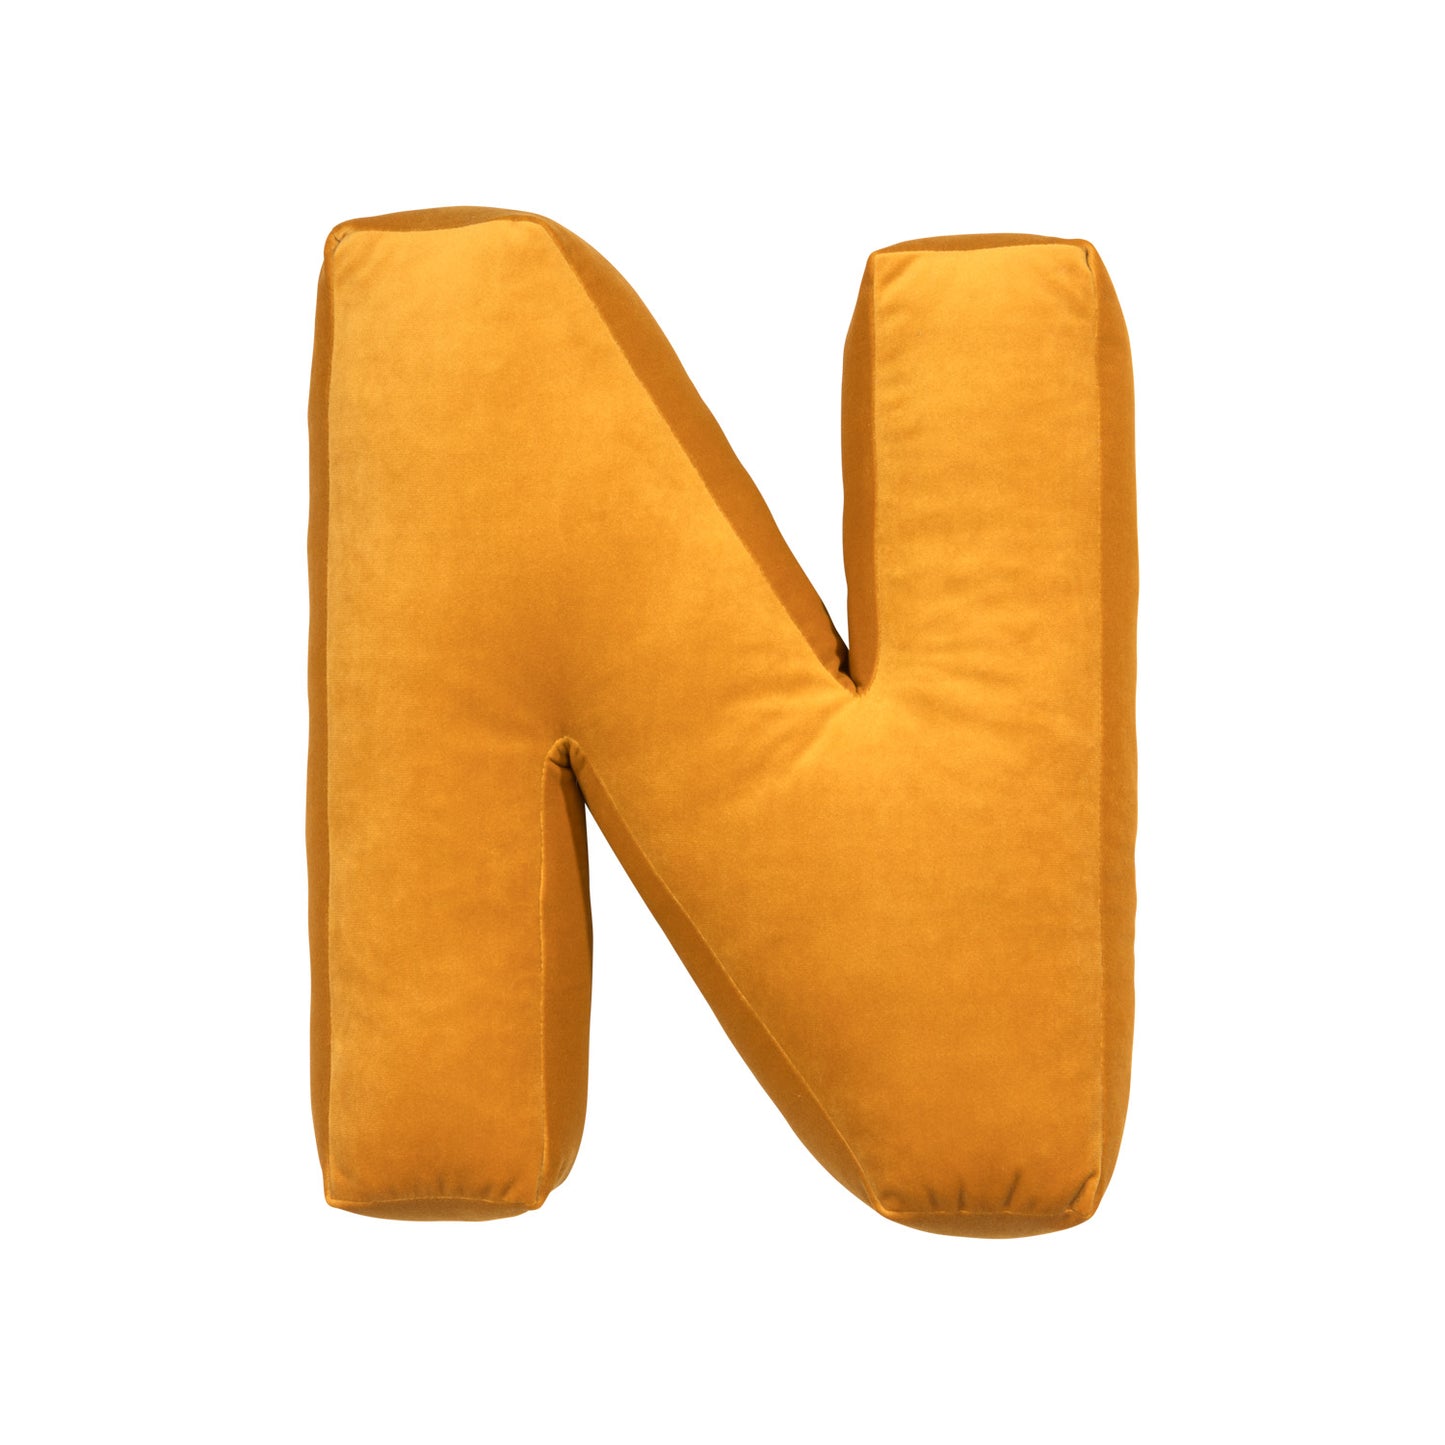 velvet letter cushion n yellow by bettys home